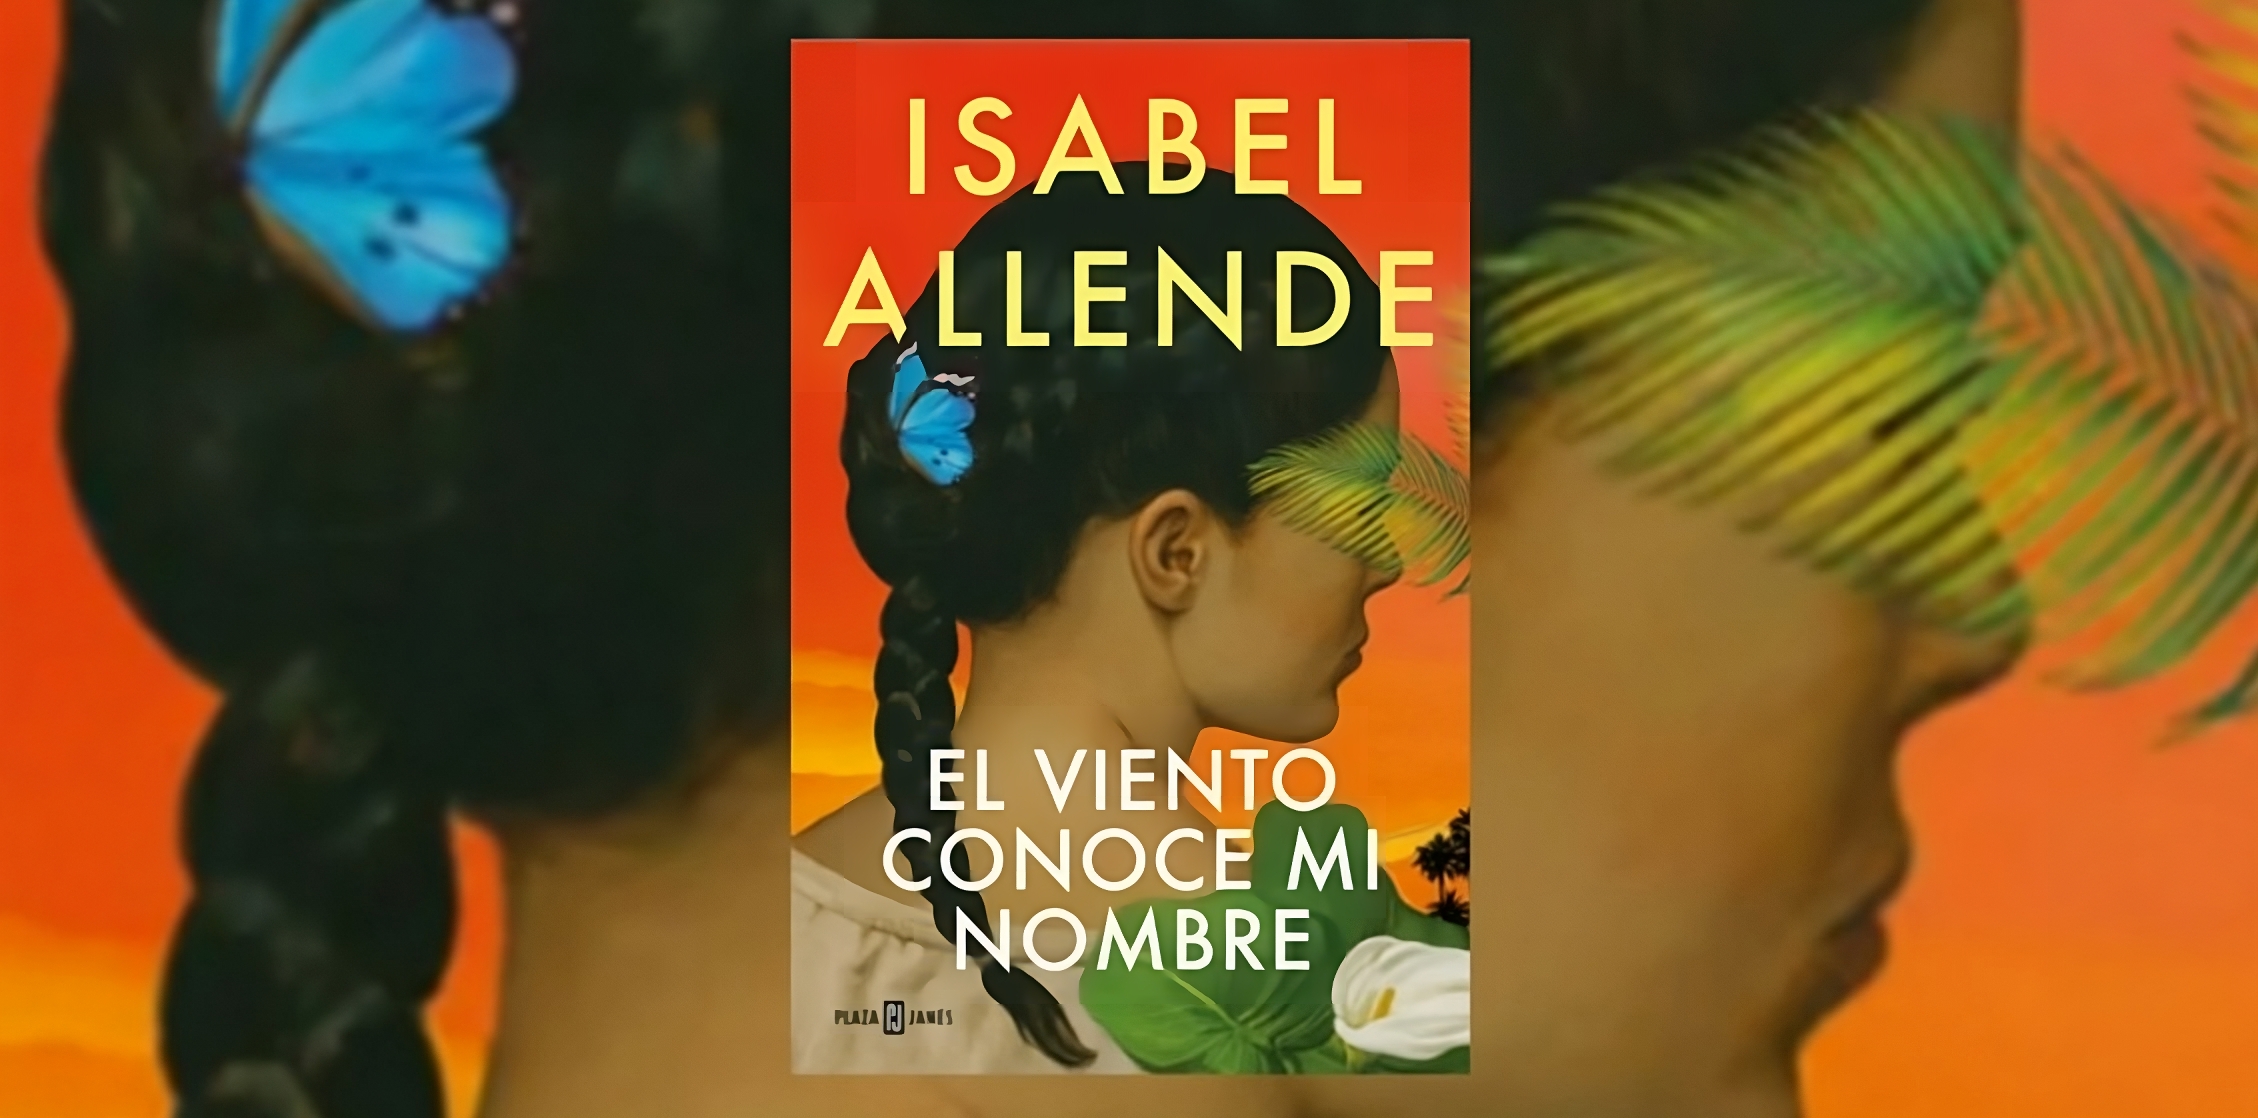 Portada del libro "El viento conoce mi nombre", de Isabel Allende. (Penguin Random House).